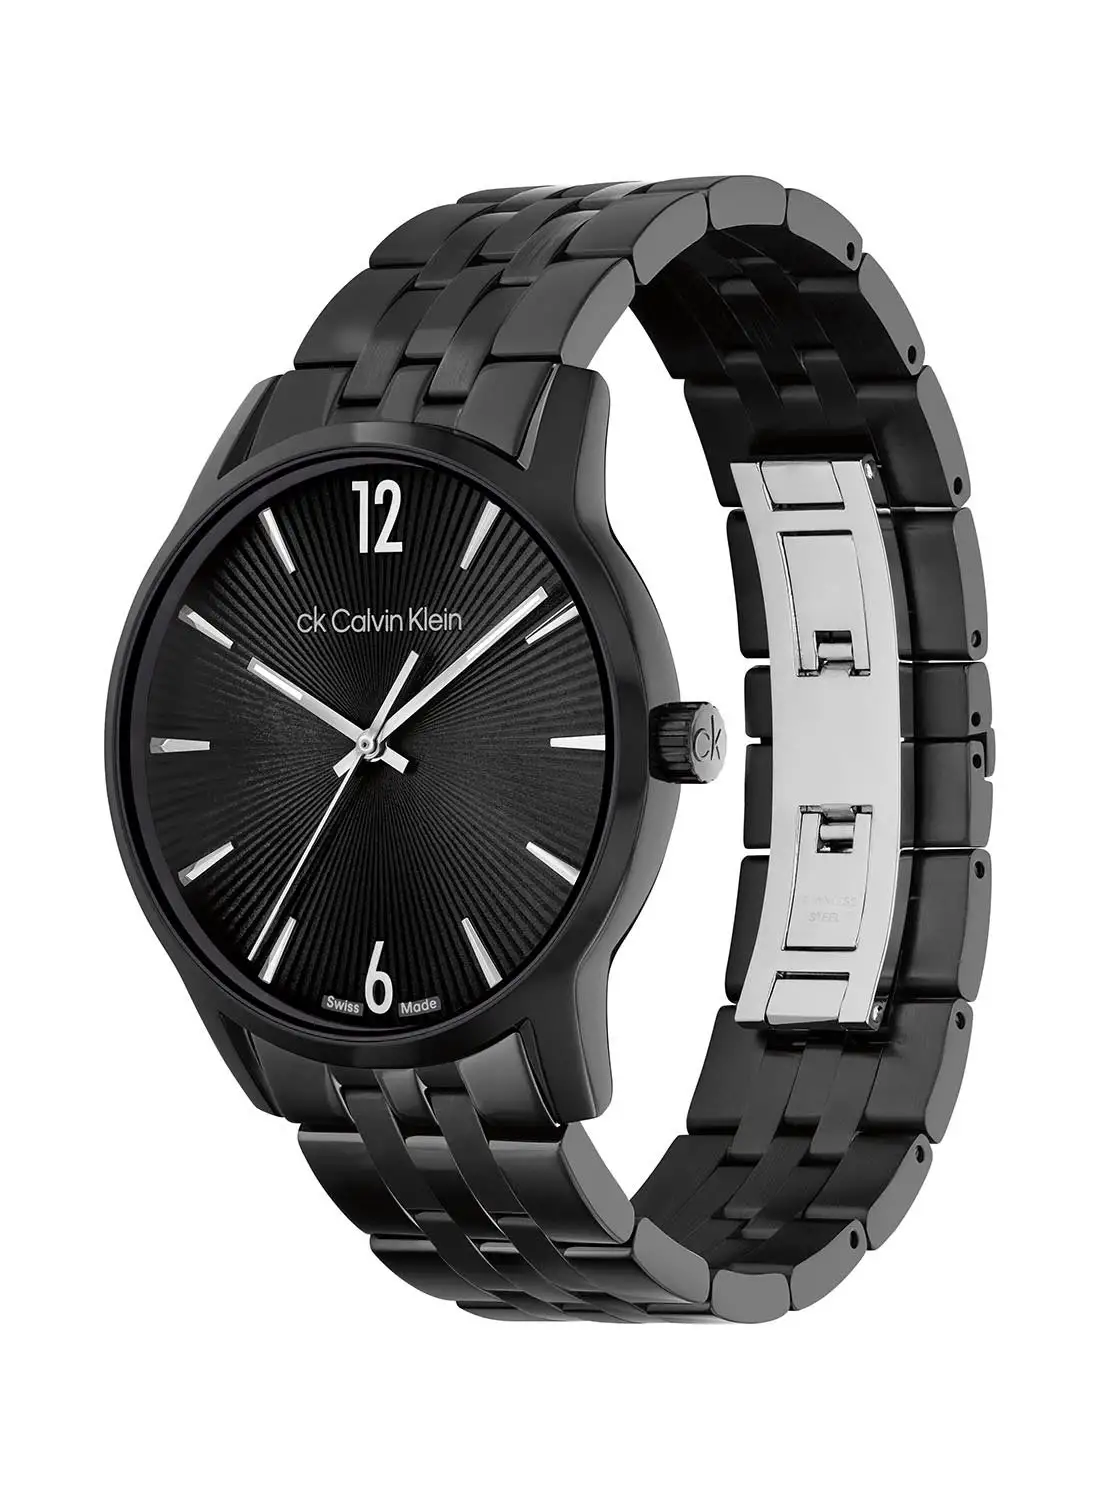 CALVIN KLEIN Men's Analog Round Shape Stainless Steel Wrist Watch 25000053 - 40 Mm